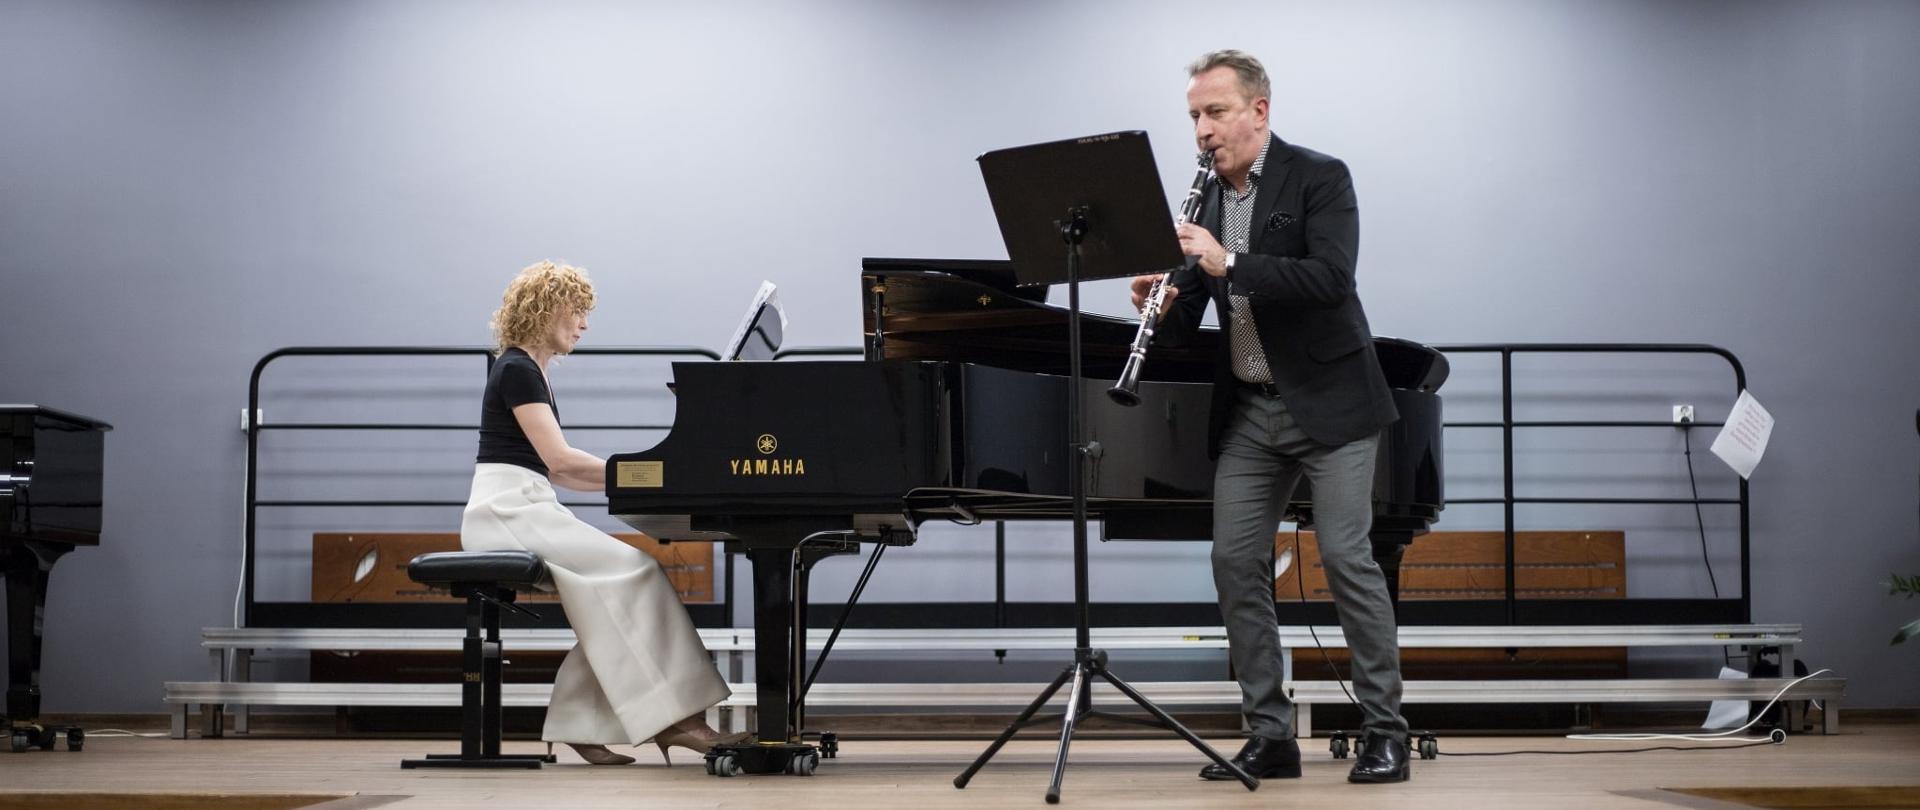 Na zdjęciu w auli PSM na klarnecie gra prof. Roman Widaszek, a akompaniuje mu na fortepianie dr Magdalena Duś.